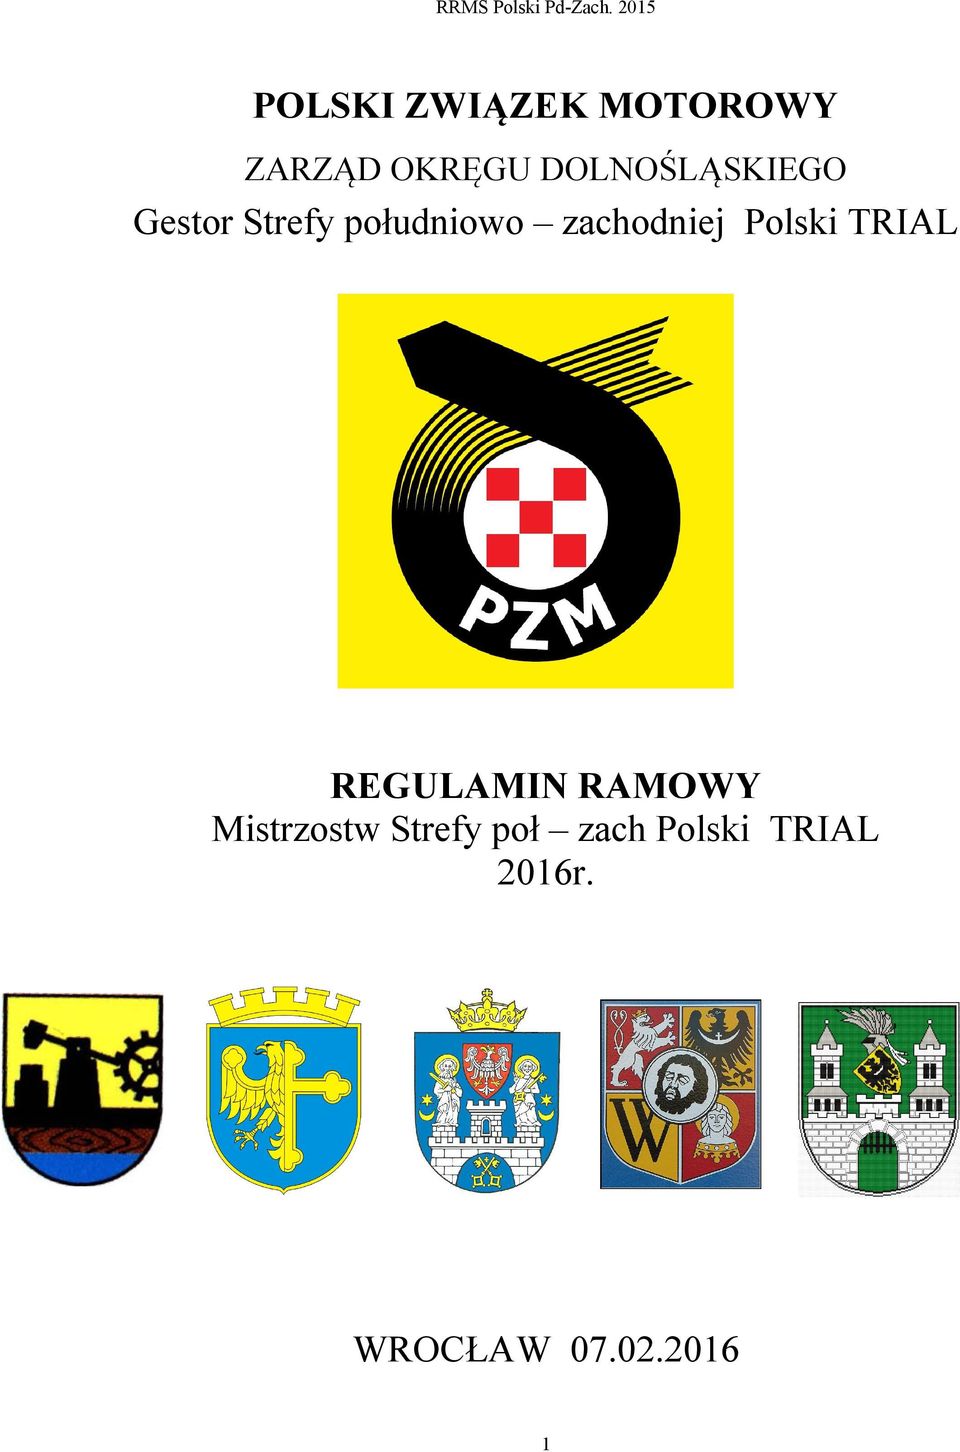 zachodniej Polski TRIAL REGULAMIN RAMOWY